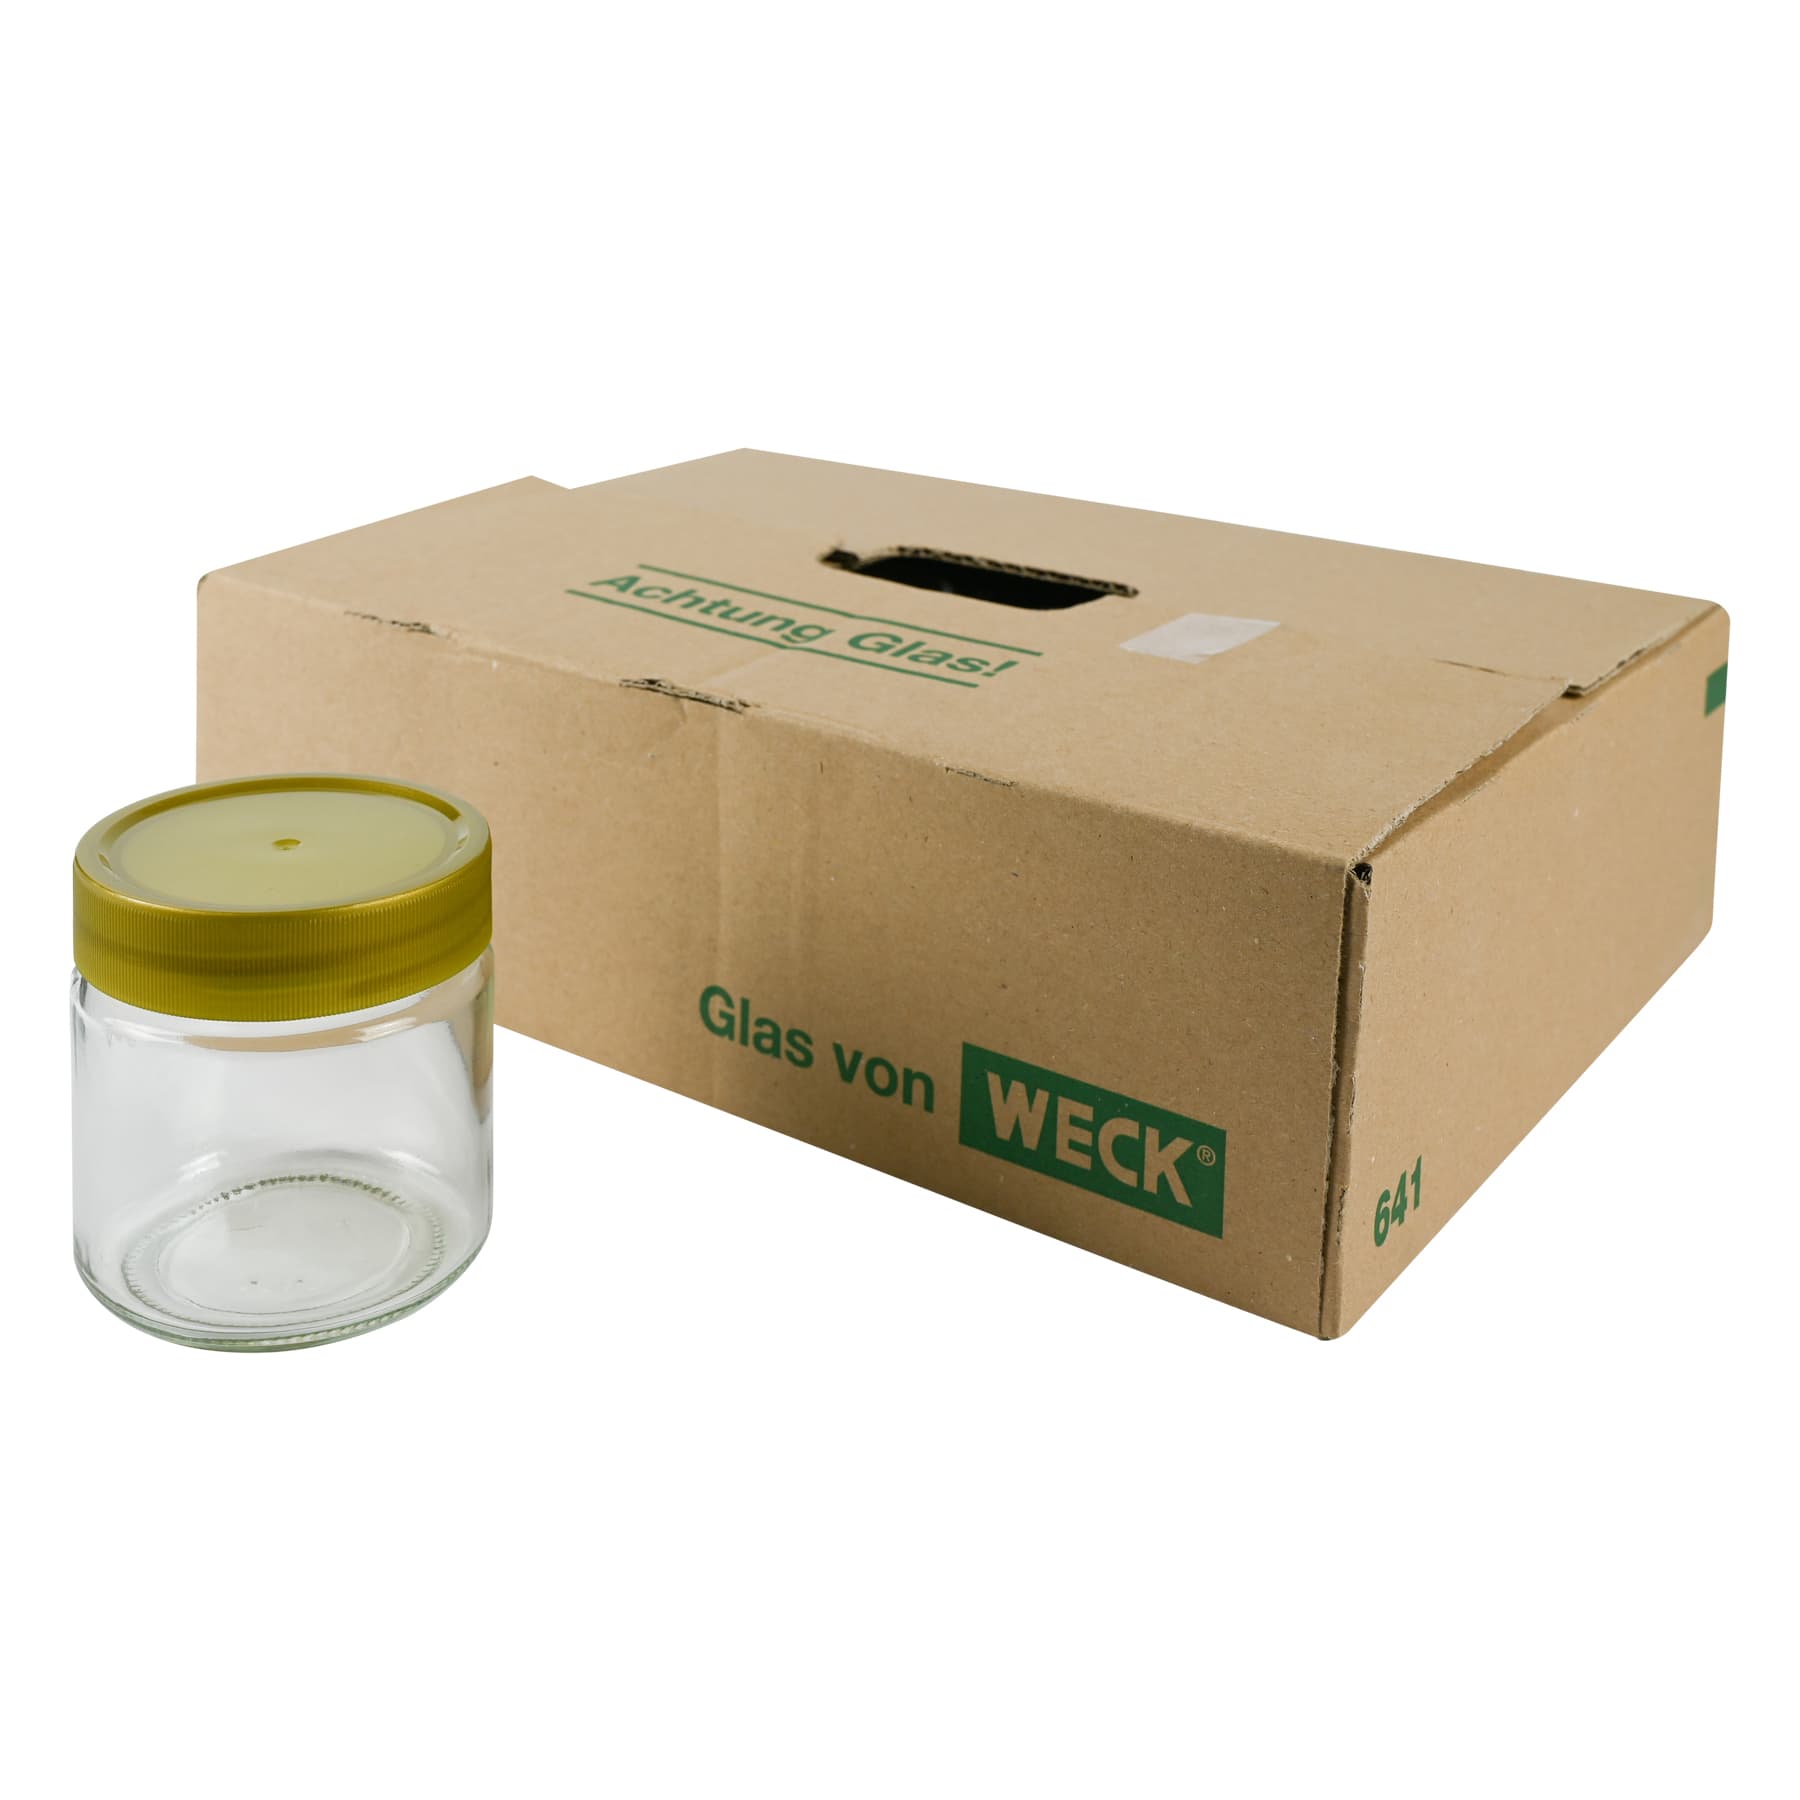 Rundglas 250 g mit Schraubdeckel 68 mm Kunststoff, im Karton nur Selbstabholung, Weck Nr. Artikel 641